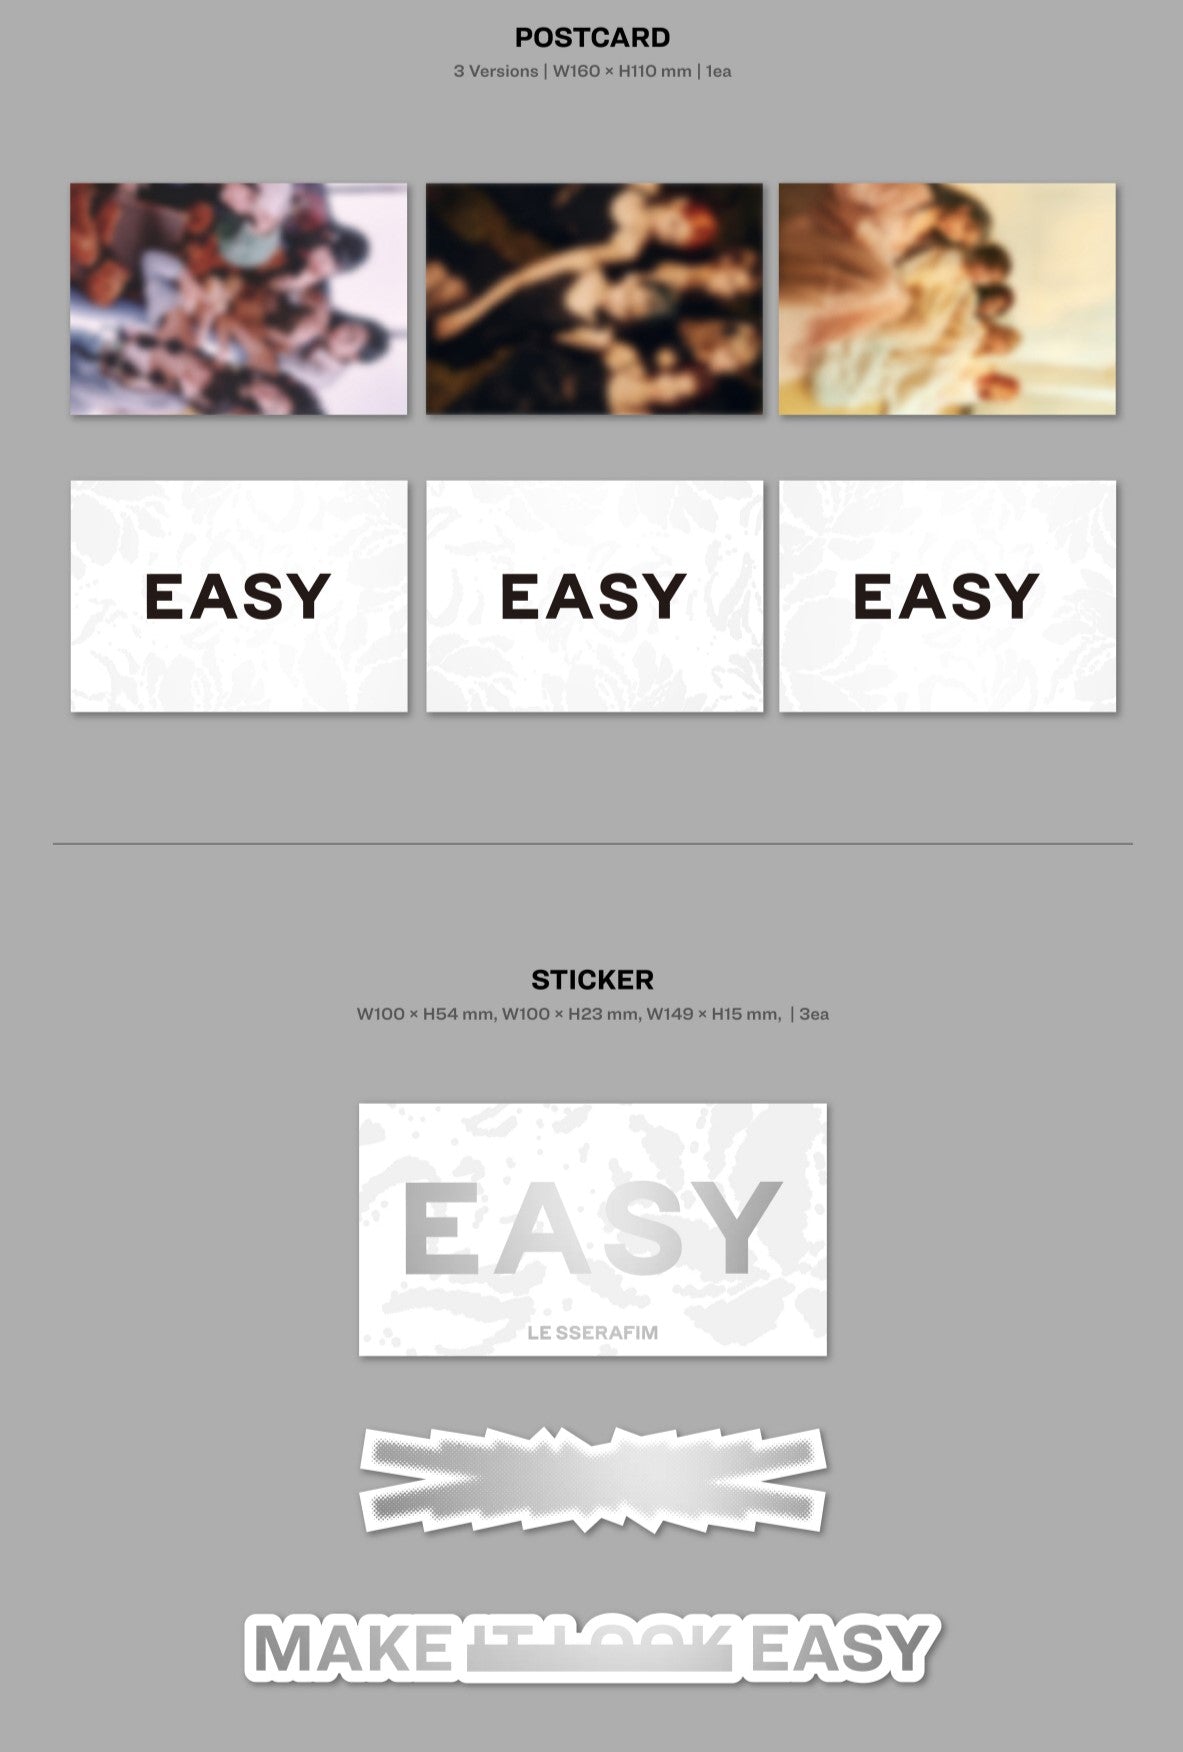 J-Store Online LE SSERAFIM - EASY